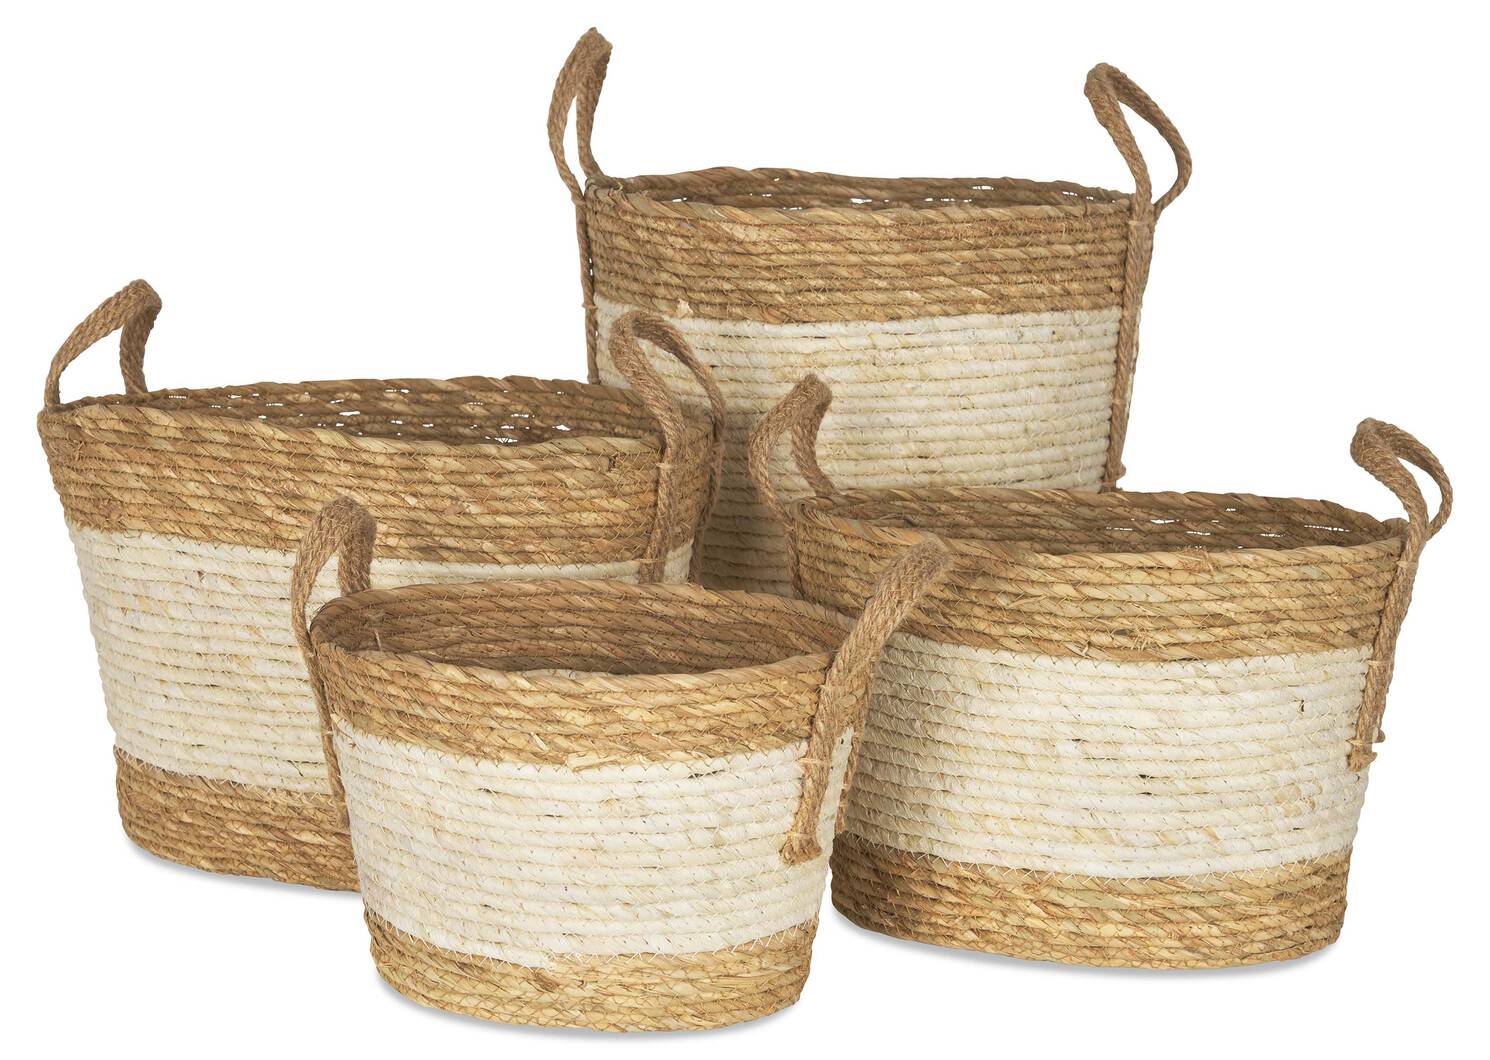 Zelie Basket Extra Large Natural/Ivor